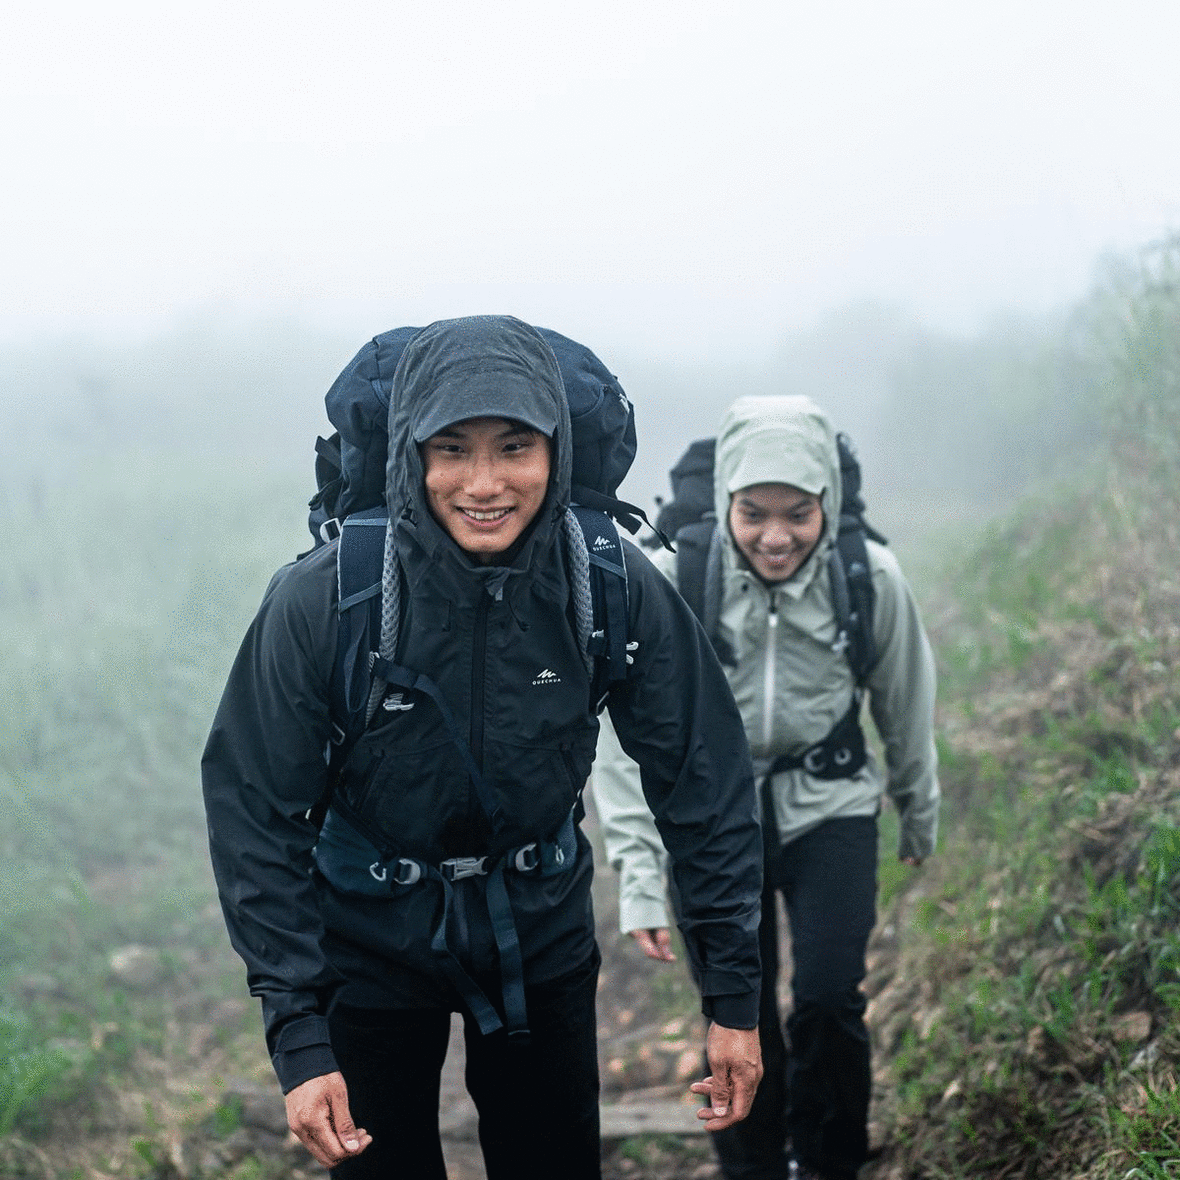 What makes hiking gear waterproof?